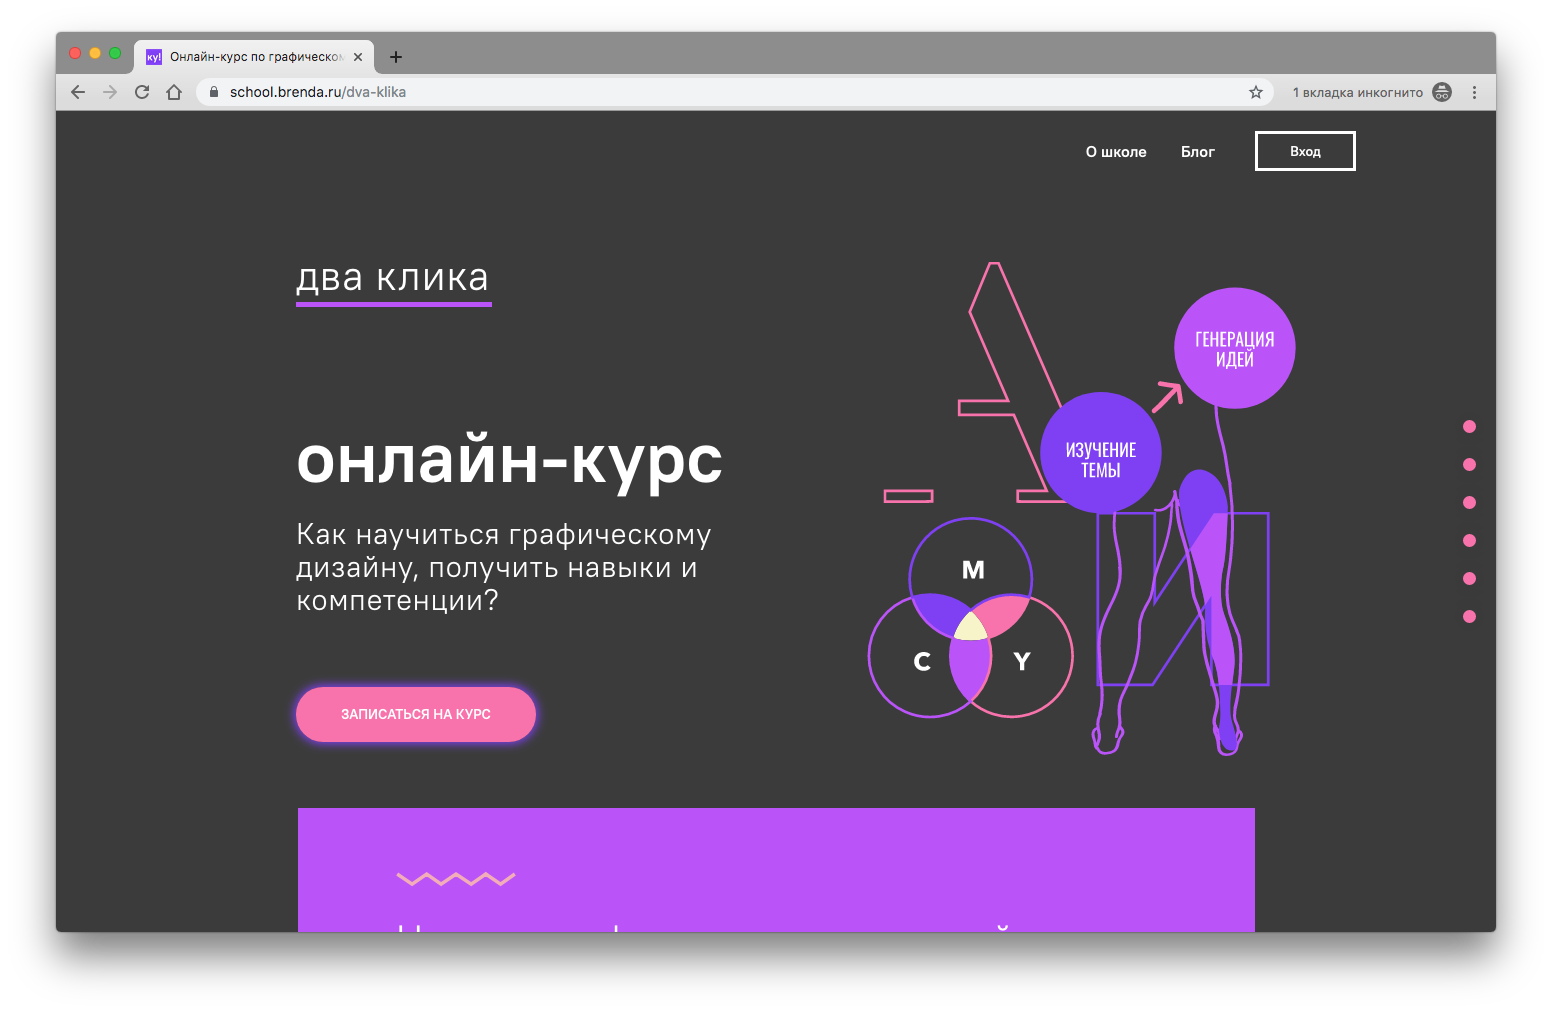 Академия Яндекса — визуальная айдентика и архитектура образовательной IT-платформы